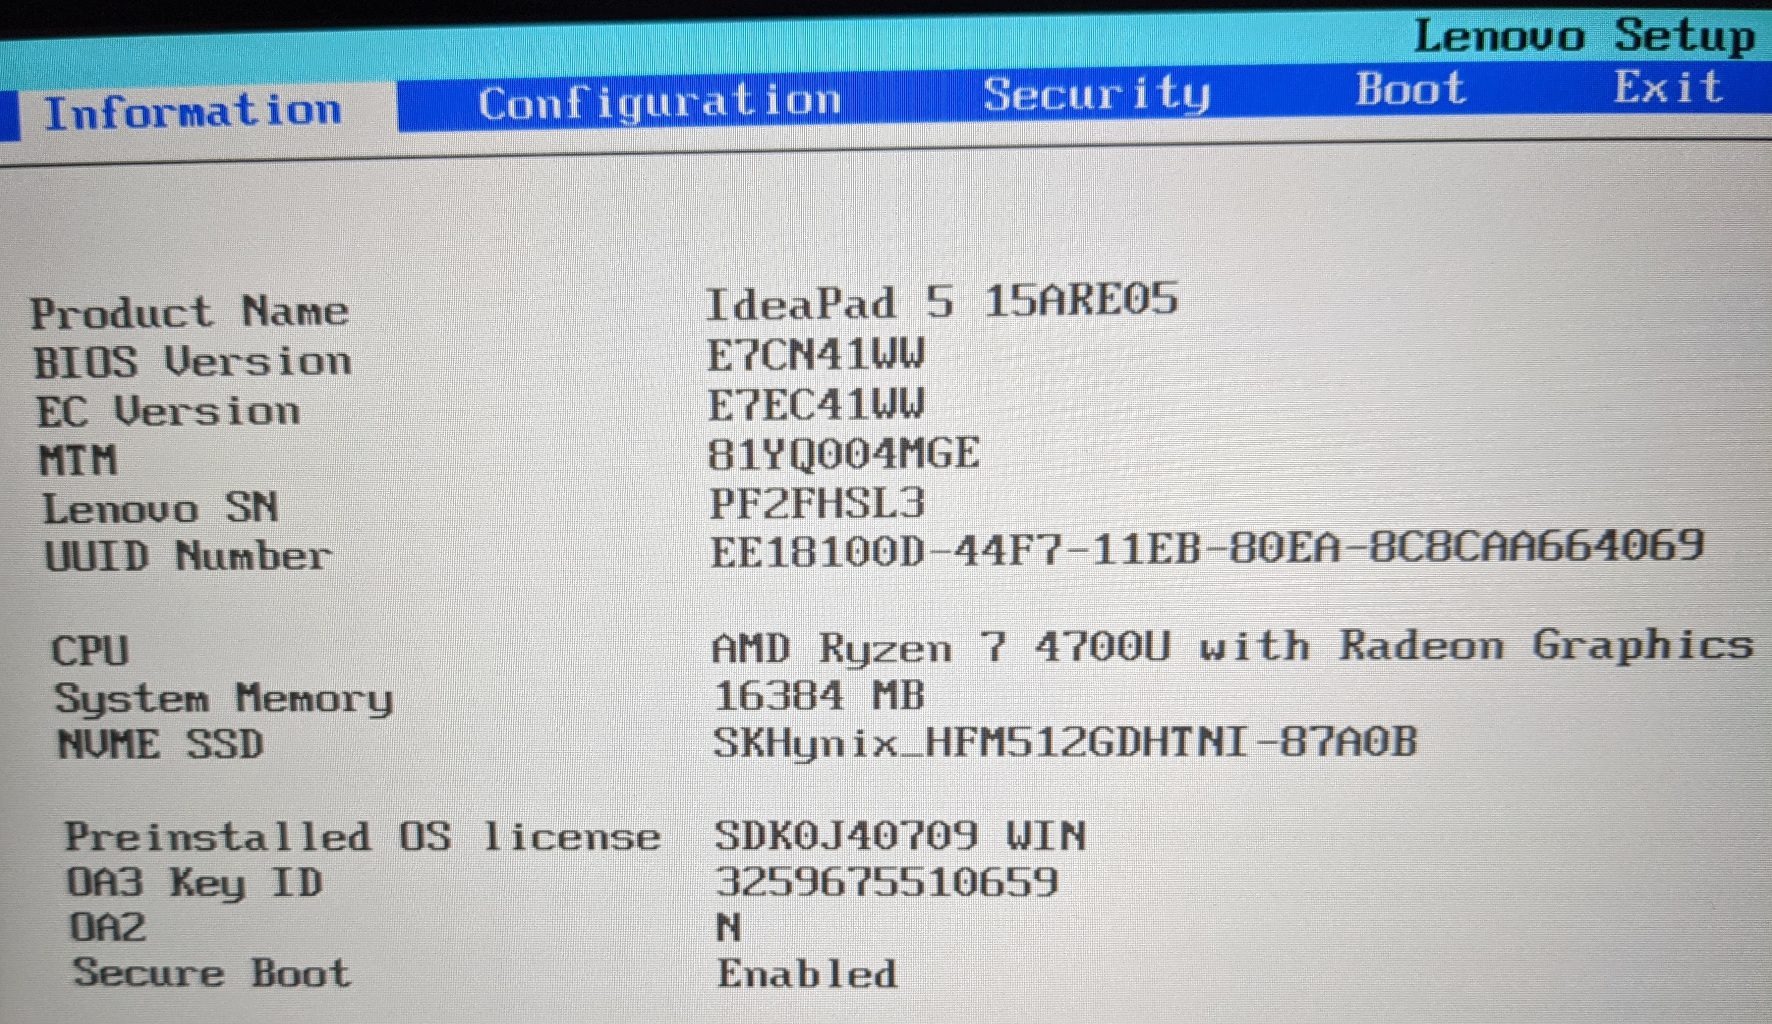 Lenovo-Systemupdate-1-42-BIOS-update-E7CN42WW-lassen-sich-nicht-installieren  - Deutsche Community - LENOVO COMMUNITY